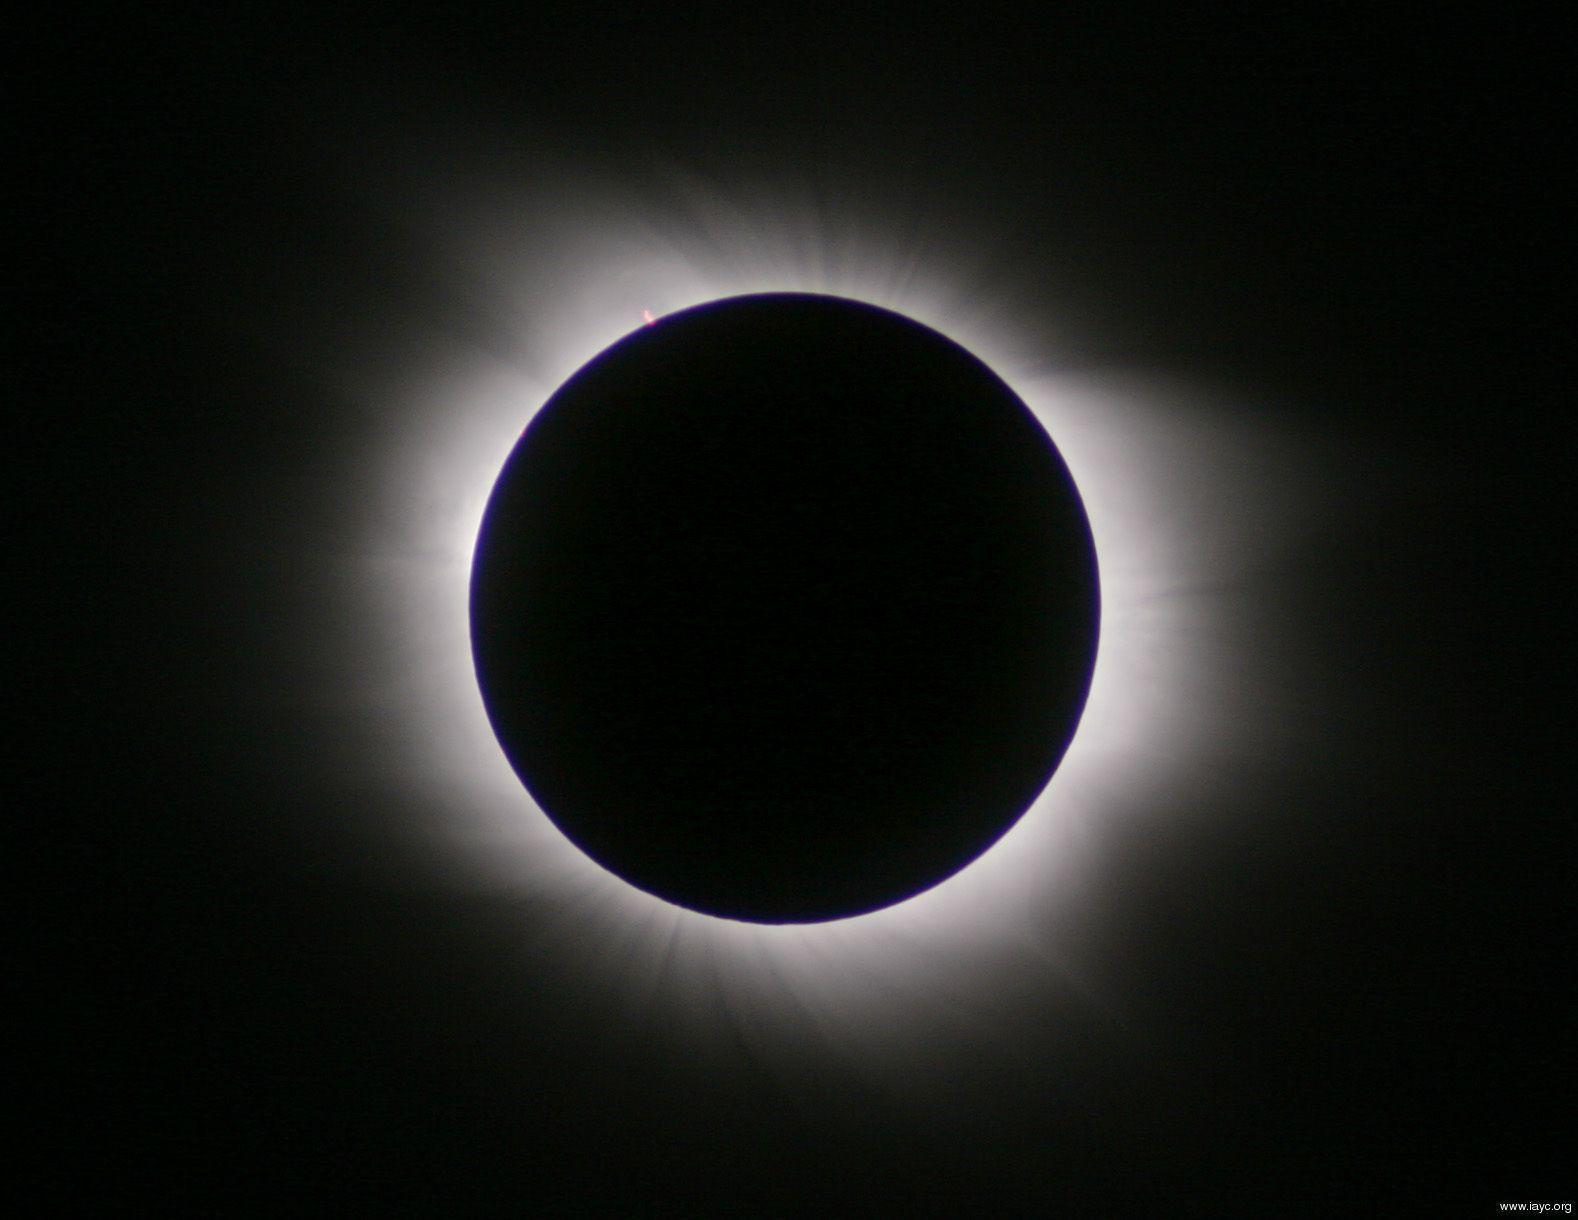 A solar eclipse of immense magnitude